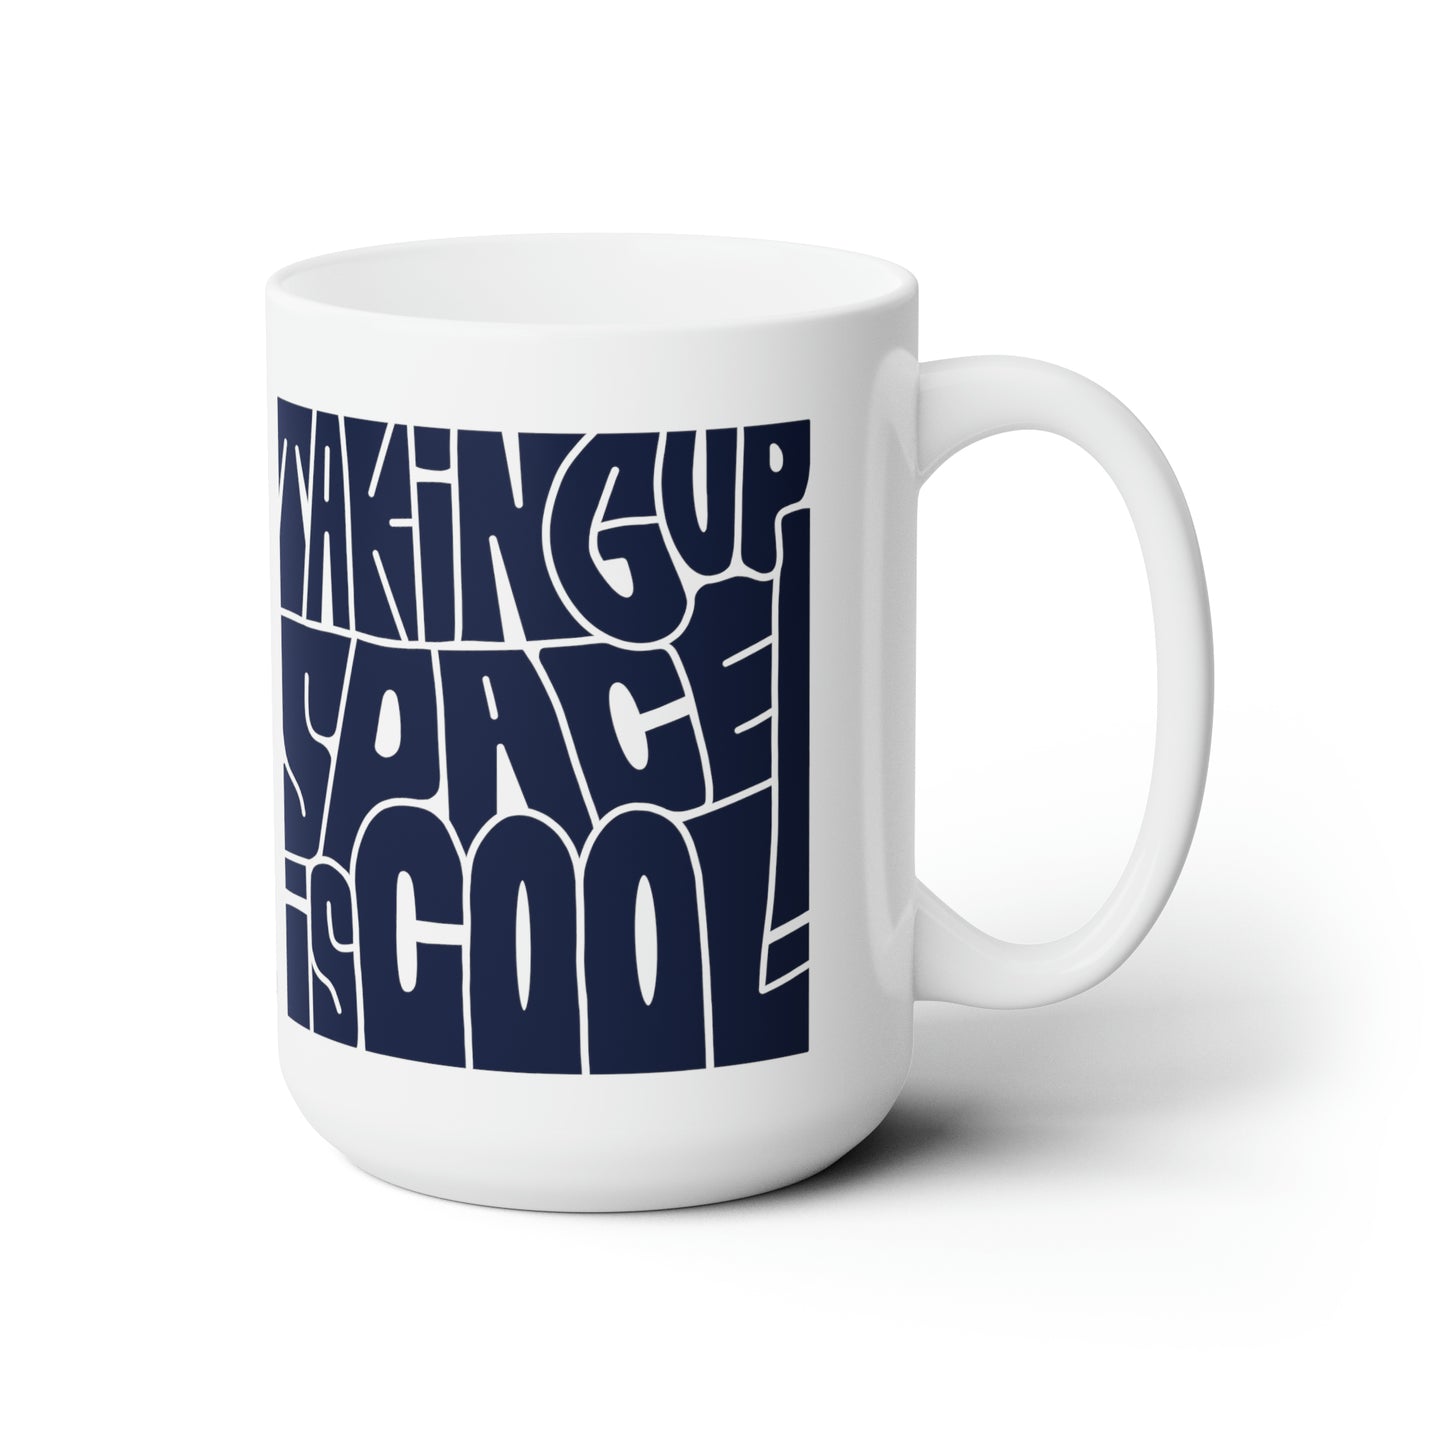 Taking Up Space Is Cool - Ceramic Mug 15oz